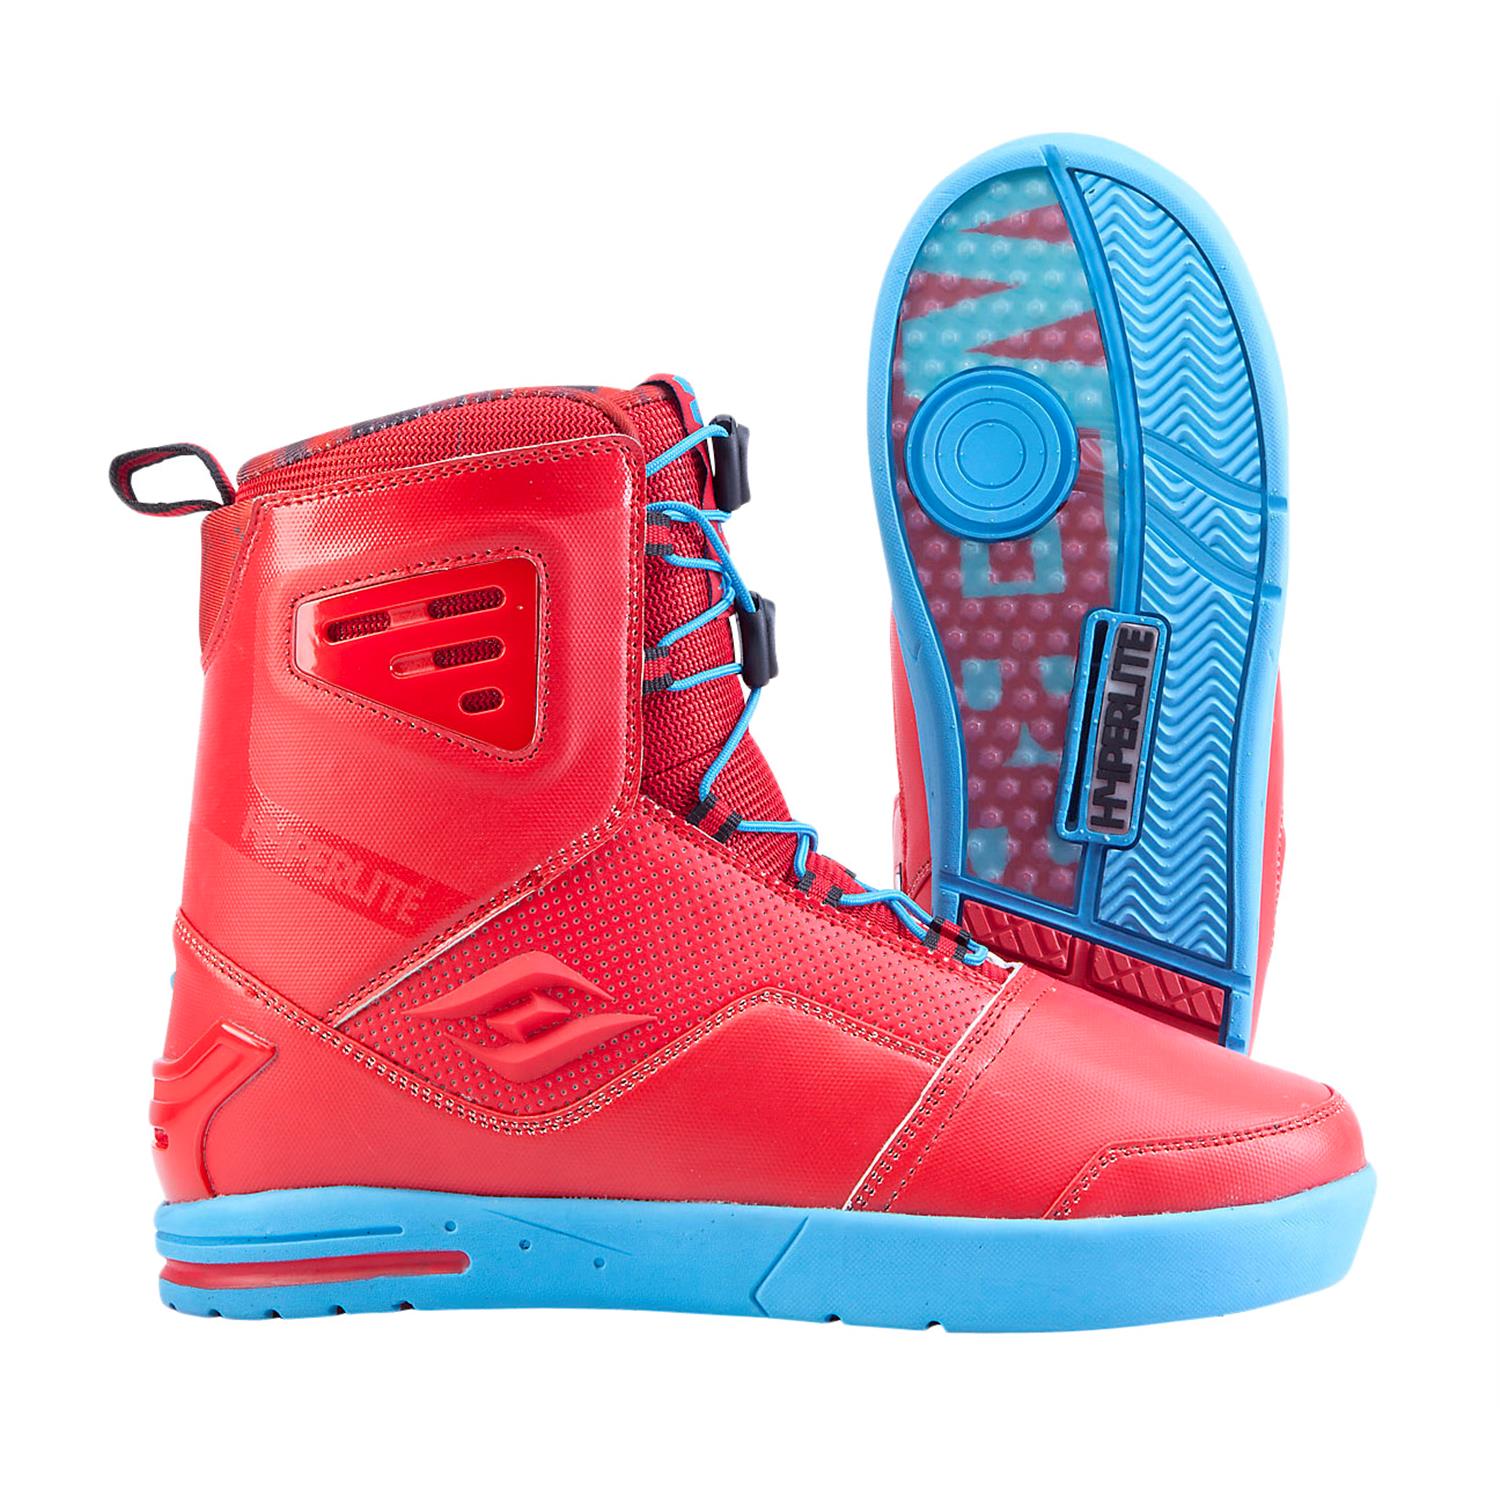 https://images.evo.com/imgp/1500/76122/350711/hyperlite-webb-wakeboard-boots-2014-red-blue-side.jpg